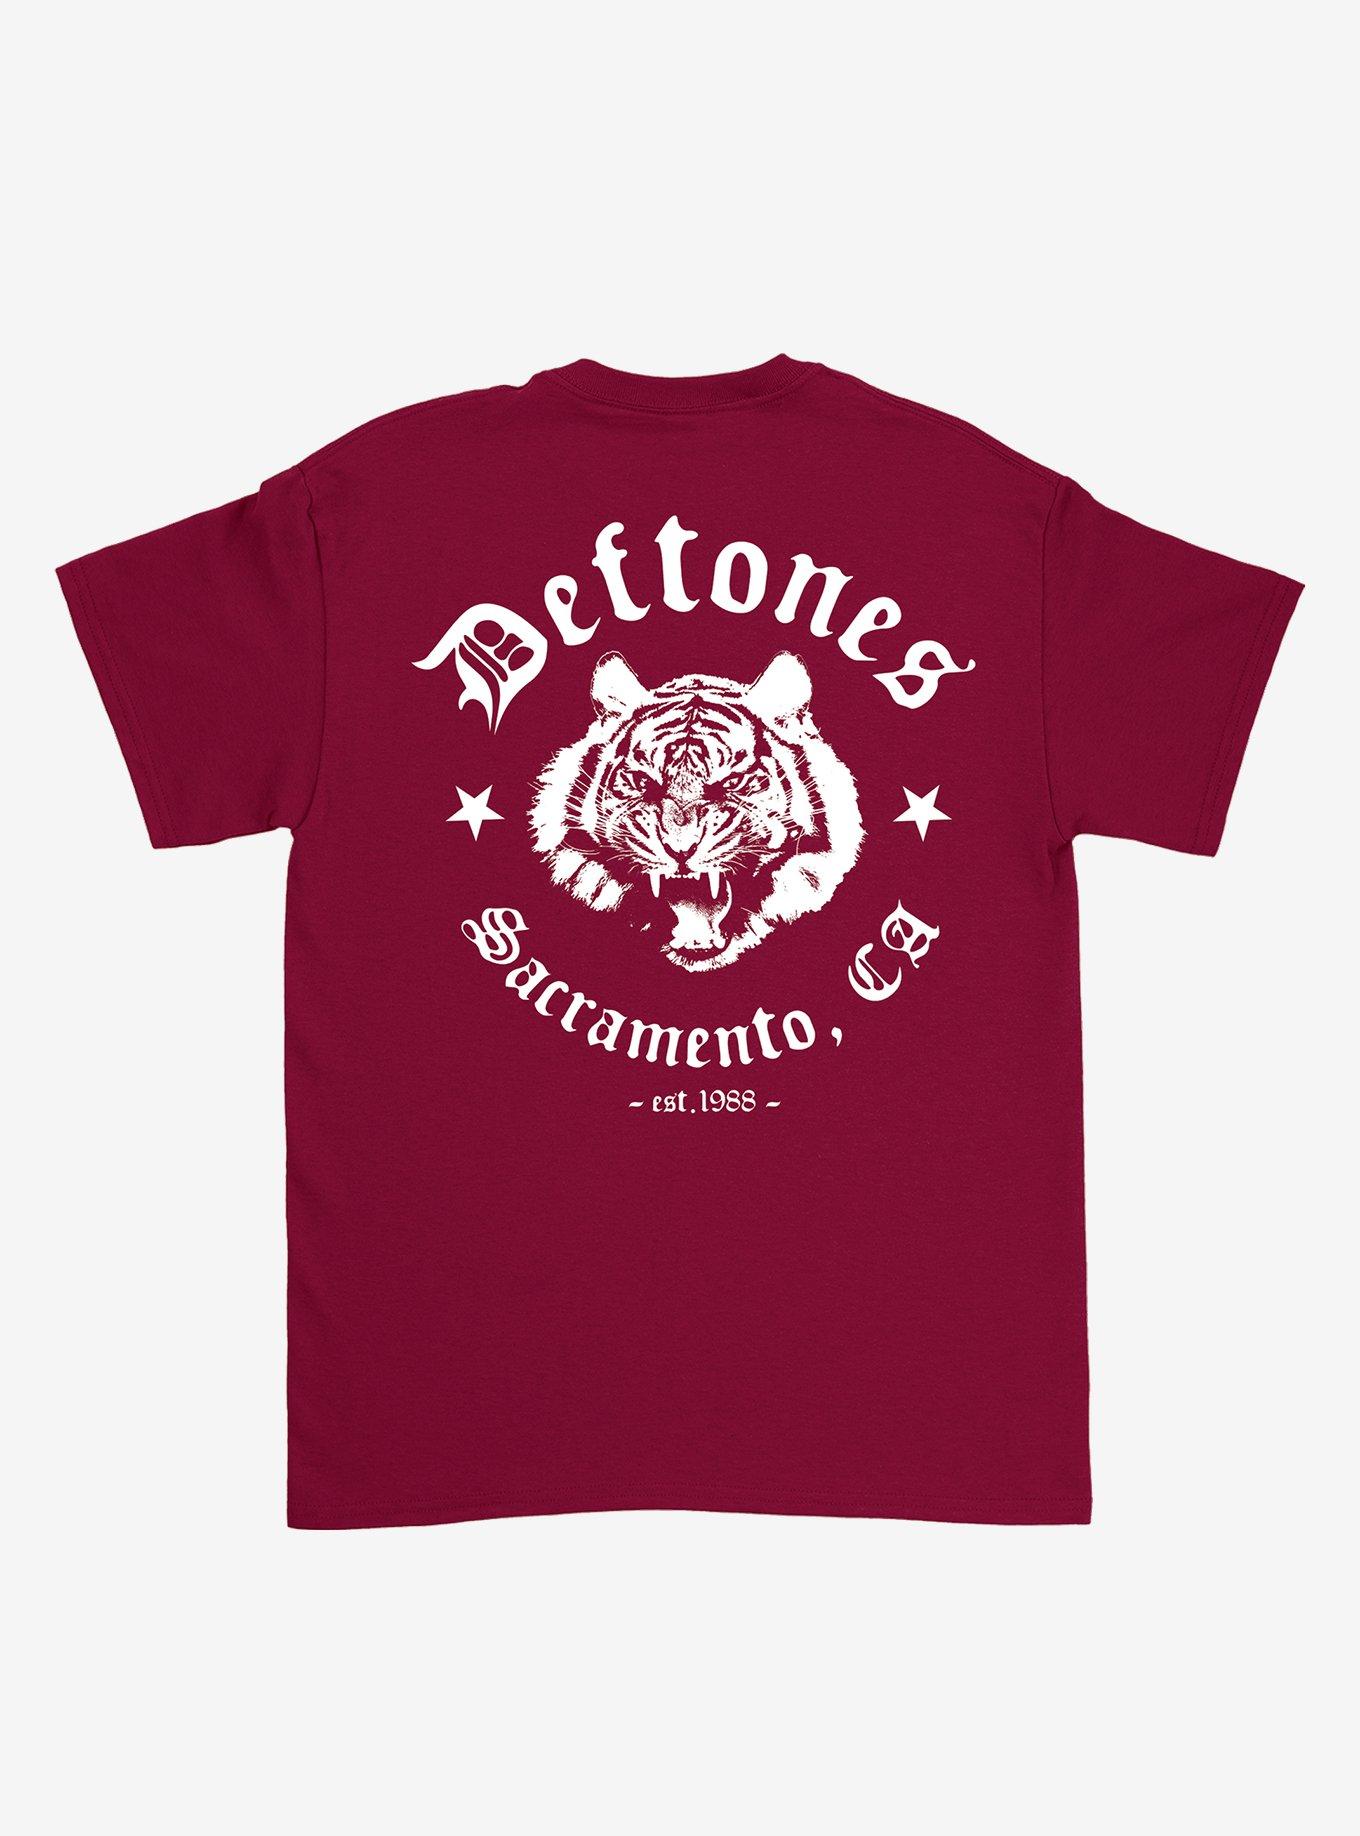 Deftones Text Logo T-Shirt, MAROON, alternate